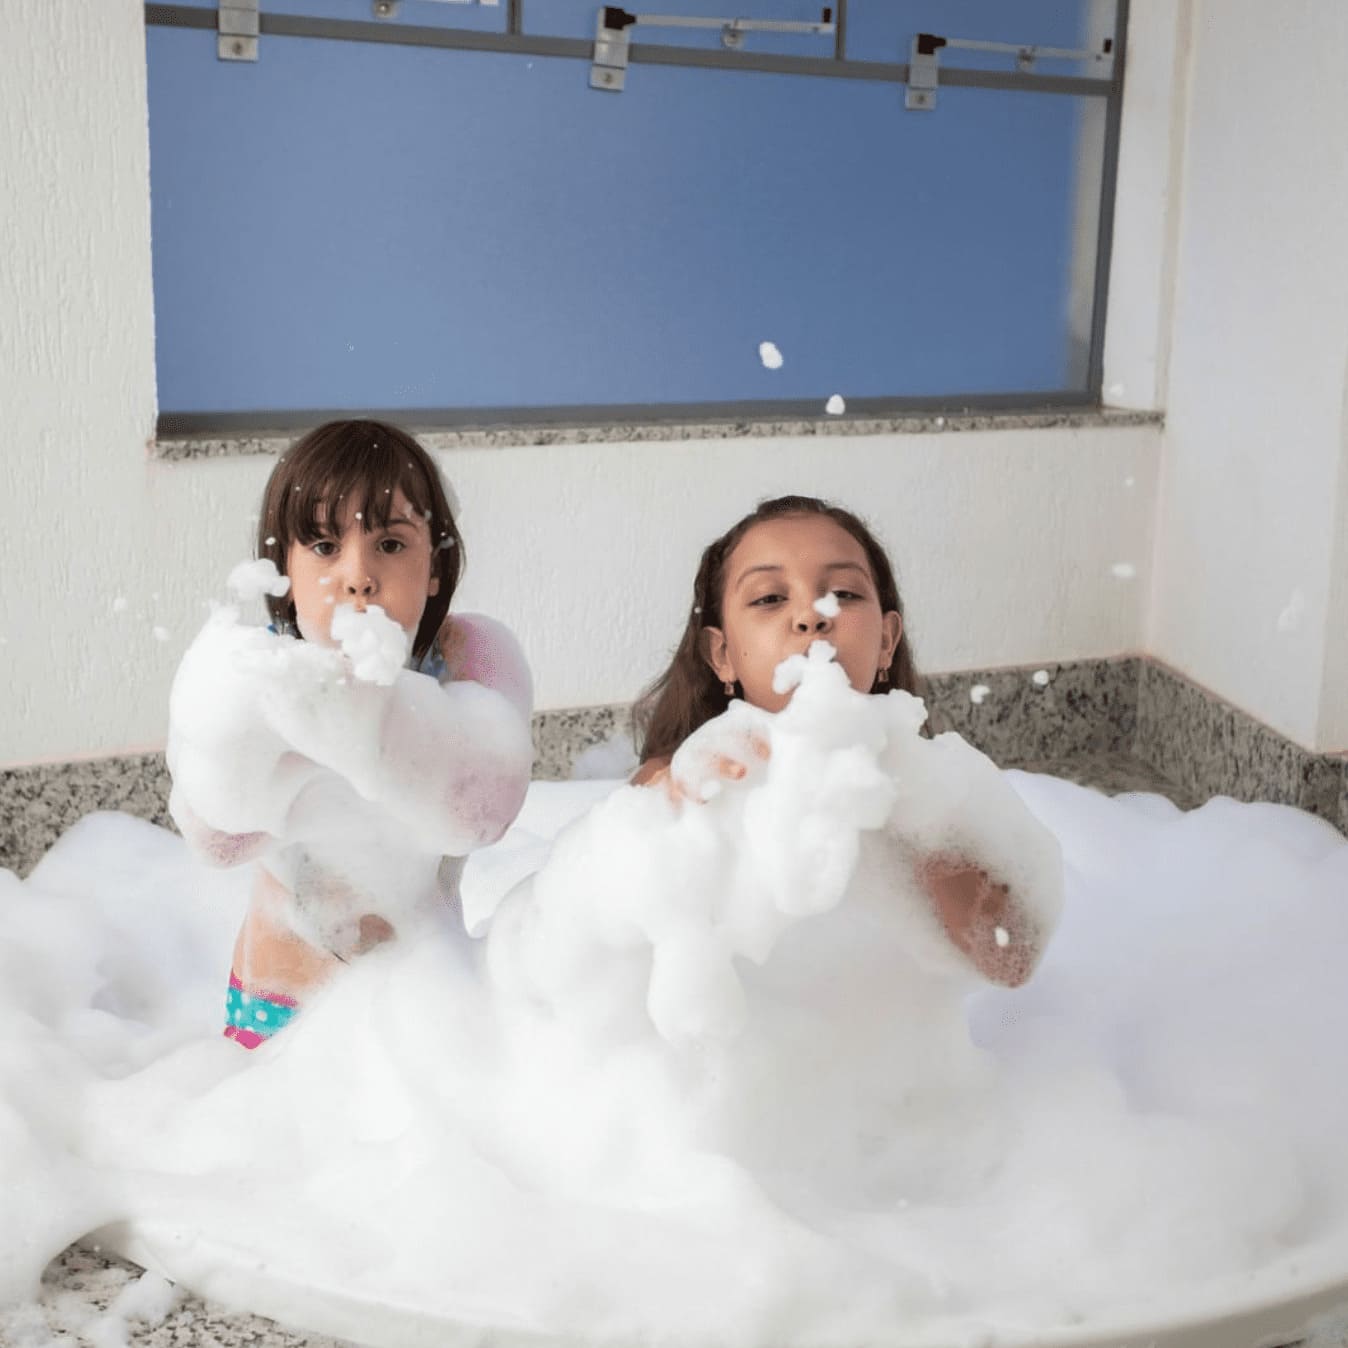 Crianças se divertindo na banheira da suíte no hotel Whyndham em Olímpia